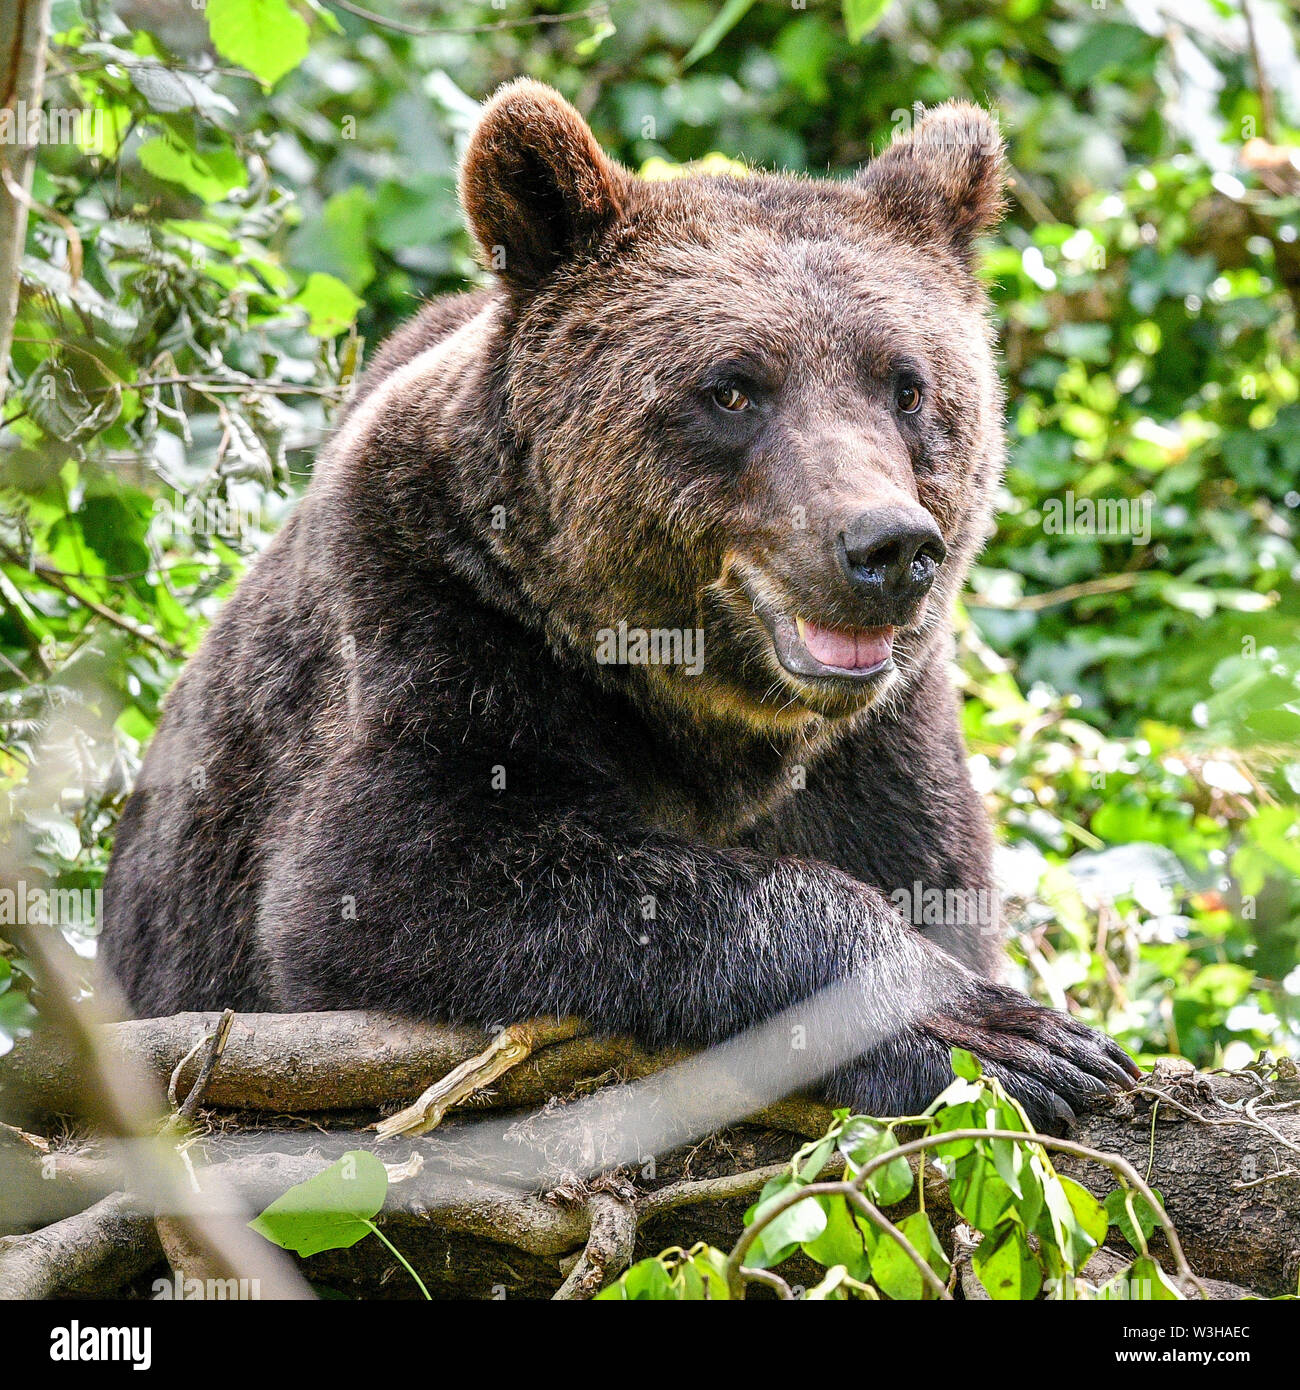 Ein europäischer Braunbär setzt sich in größten Braun in Großbritannien tragen Ausstellung bei wilden Ort Projekt, South Gloucestershire, wo die Bären, die sich in einem riesigen neuen Wald Lebensraum sind, neben der Wölfe, Luchse und Wolverine zu leben, so wie sie vor Tausenden von Jahren getan haben würde. Tragen Holz ist für die Öffentlichkeit am 25. Juli zu öffnen. Stockfoto